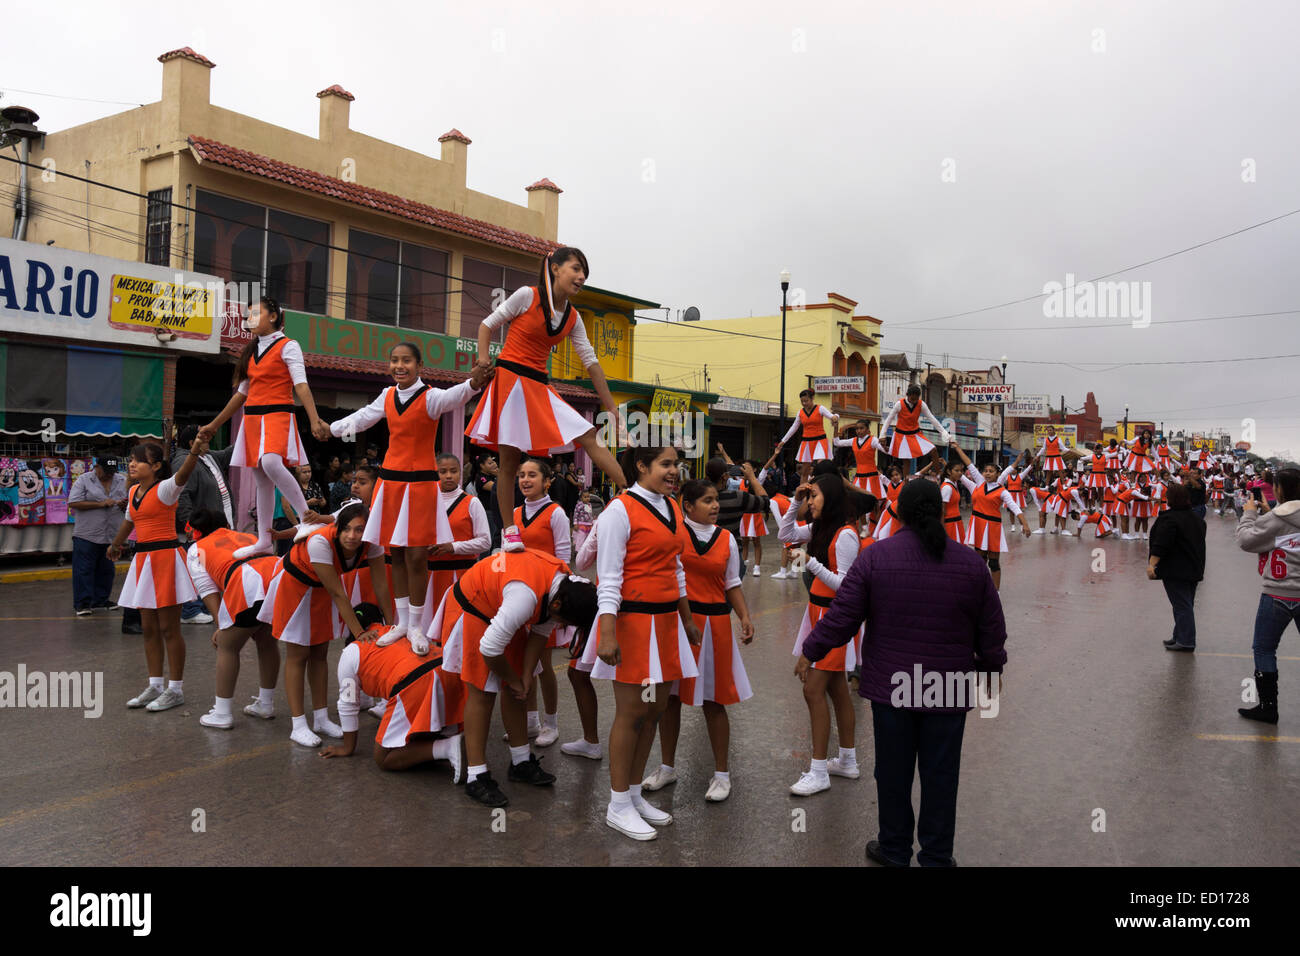 Les jeunes filles effectuer au cours d'une routine de cheerleading défilé pour célébrer le Jour de l'indépendance mexicaine. Banque D'Images